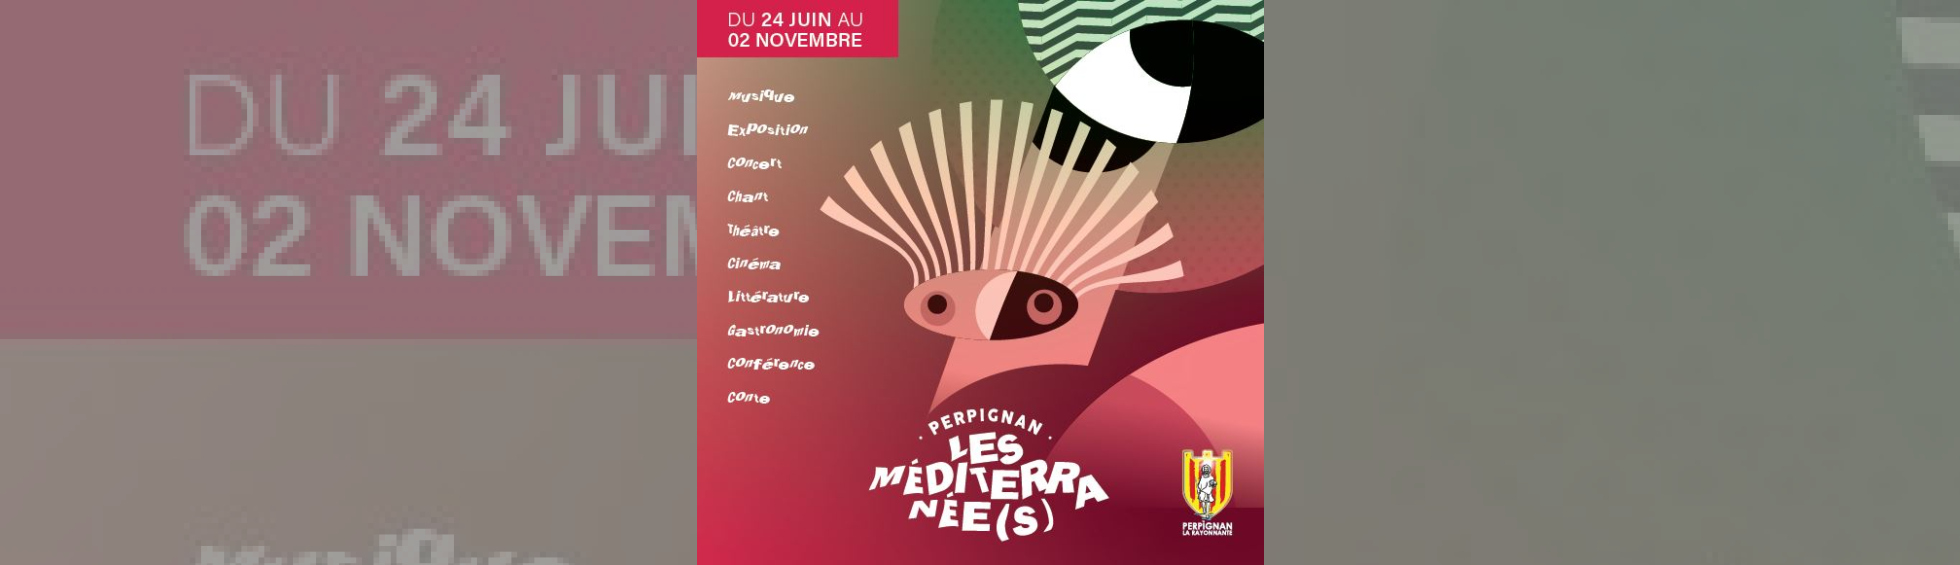 Festival Les Méditerranée(s) de Perpignan